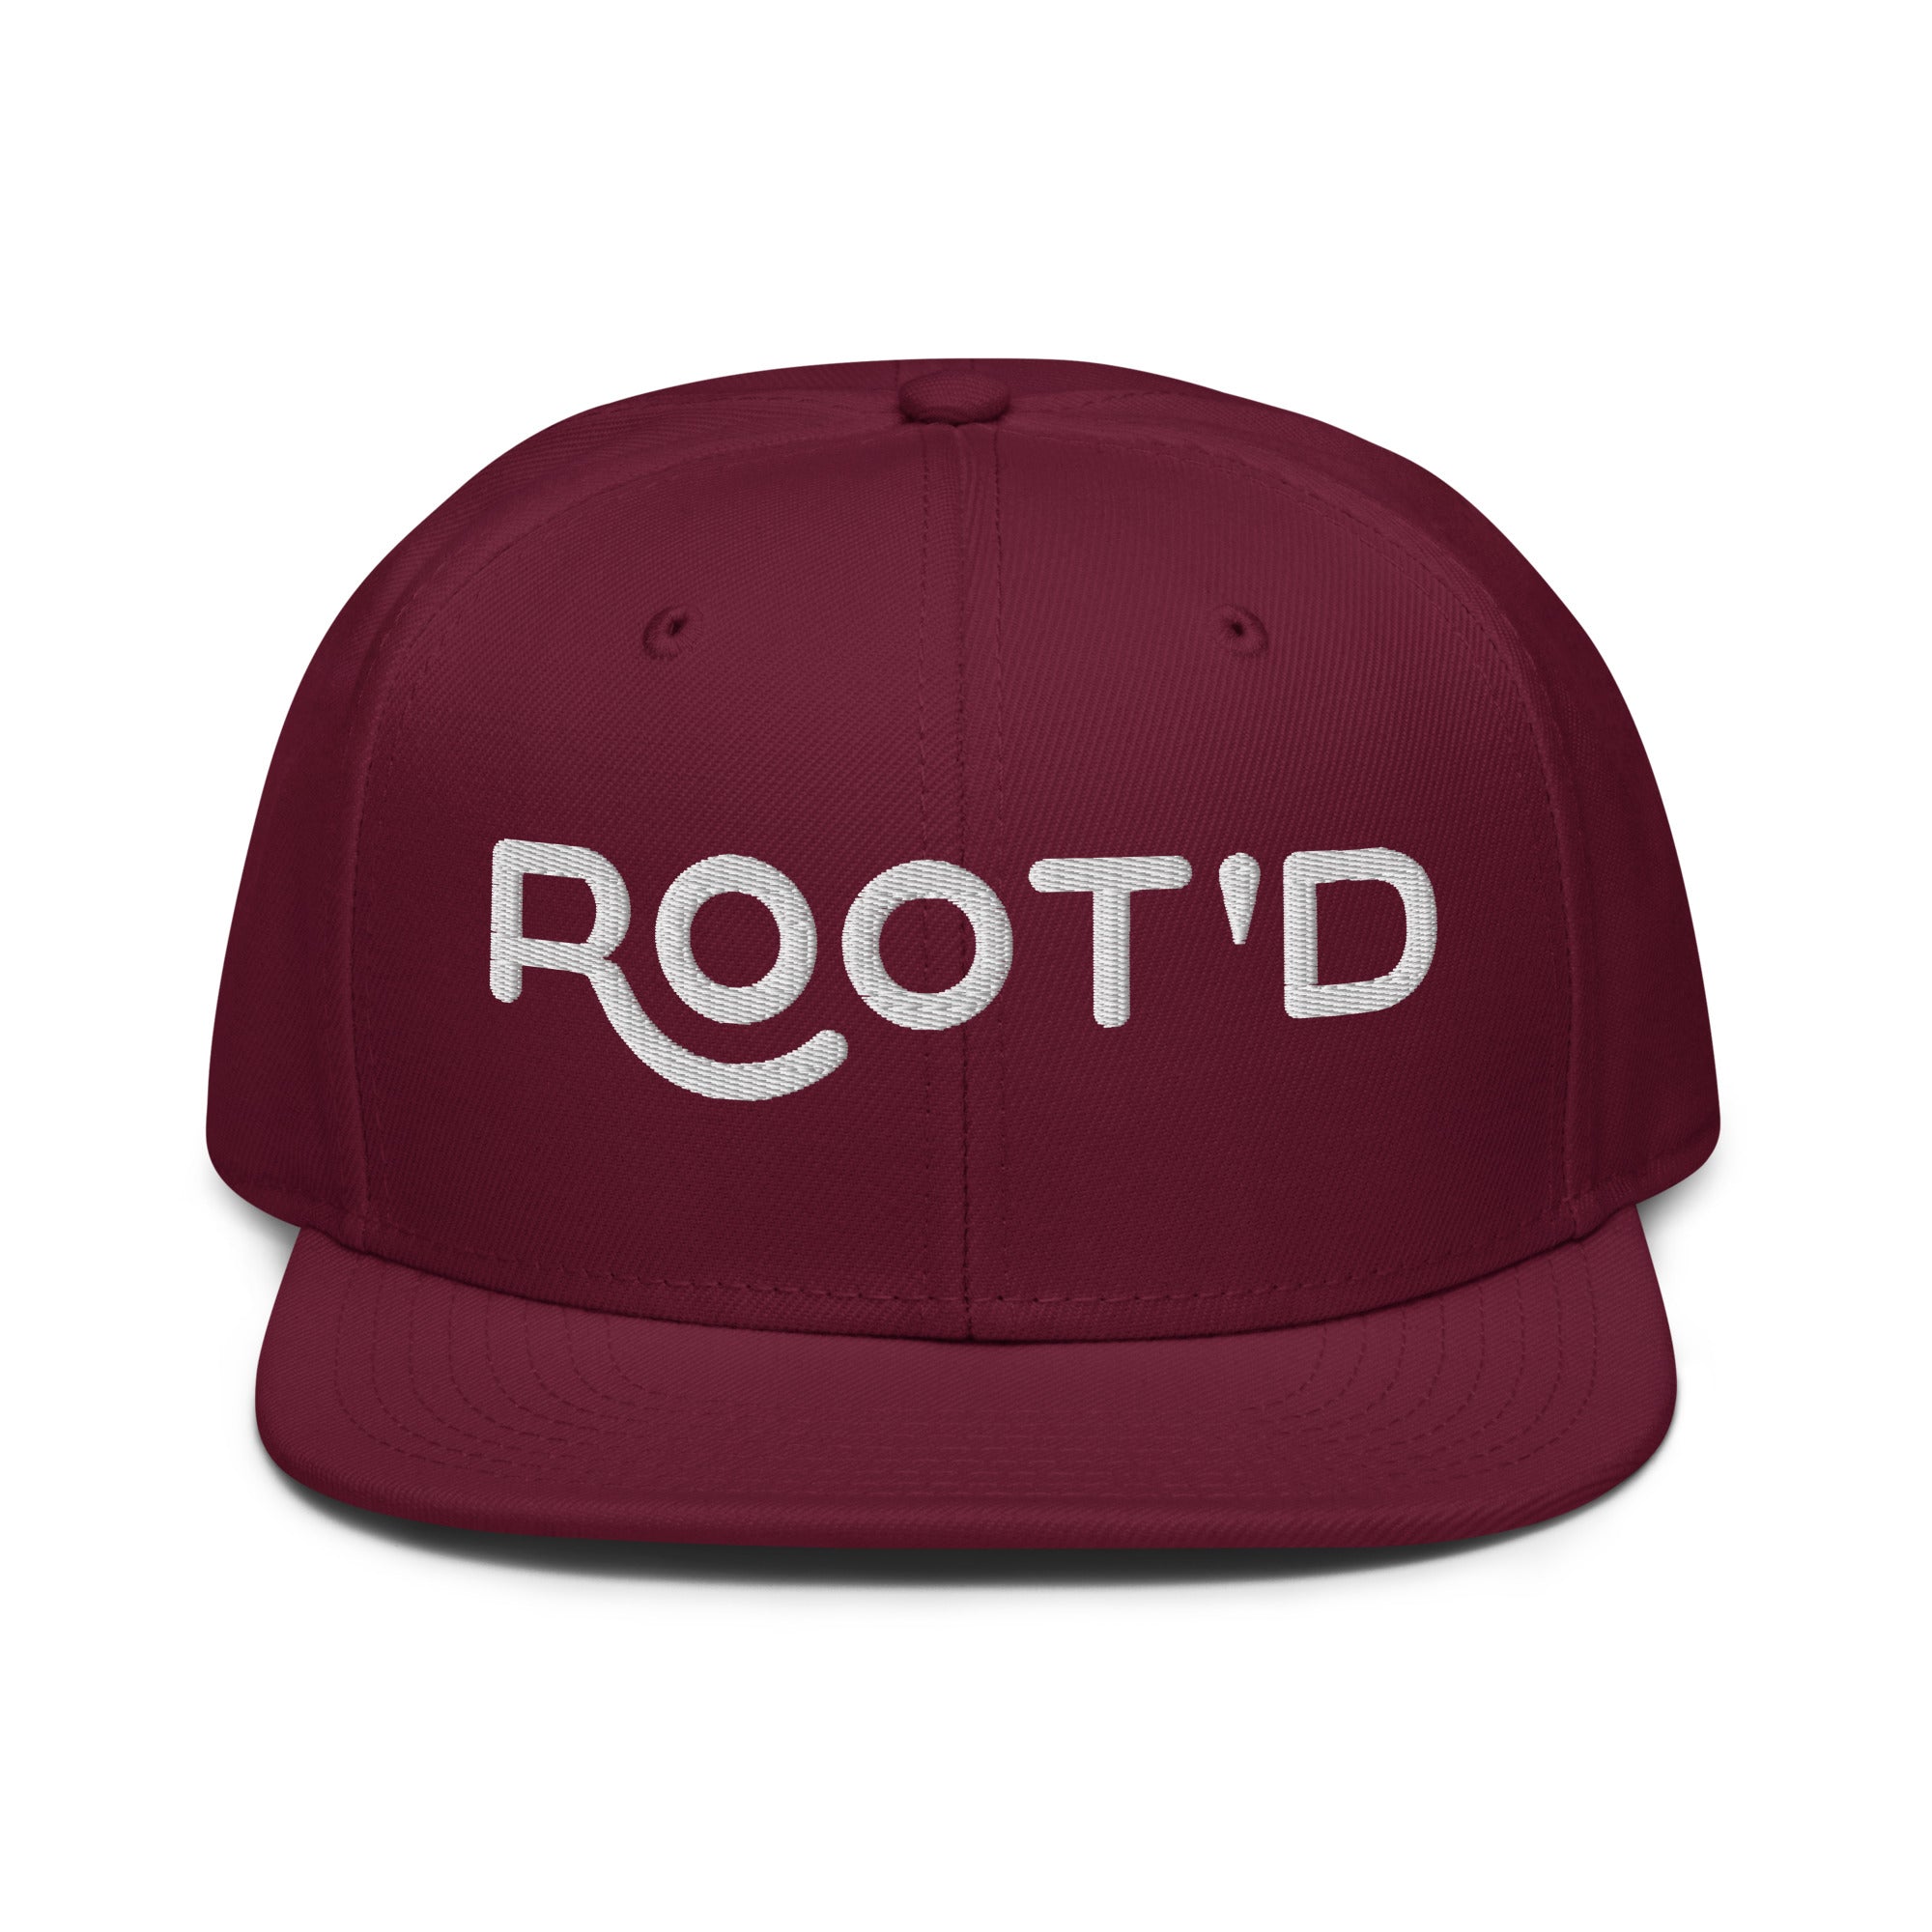 Root'd Snapback Hat